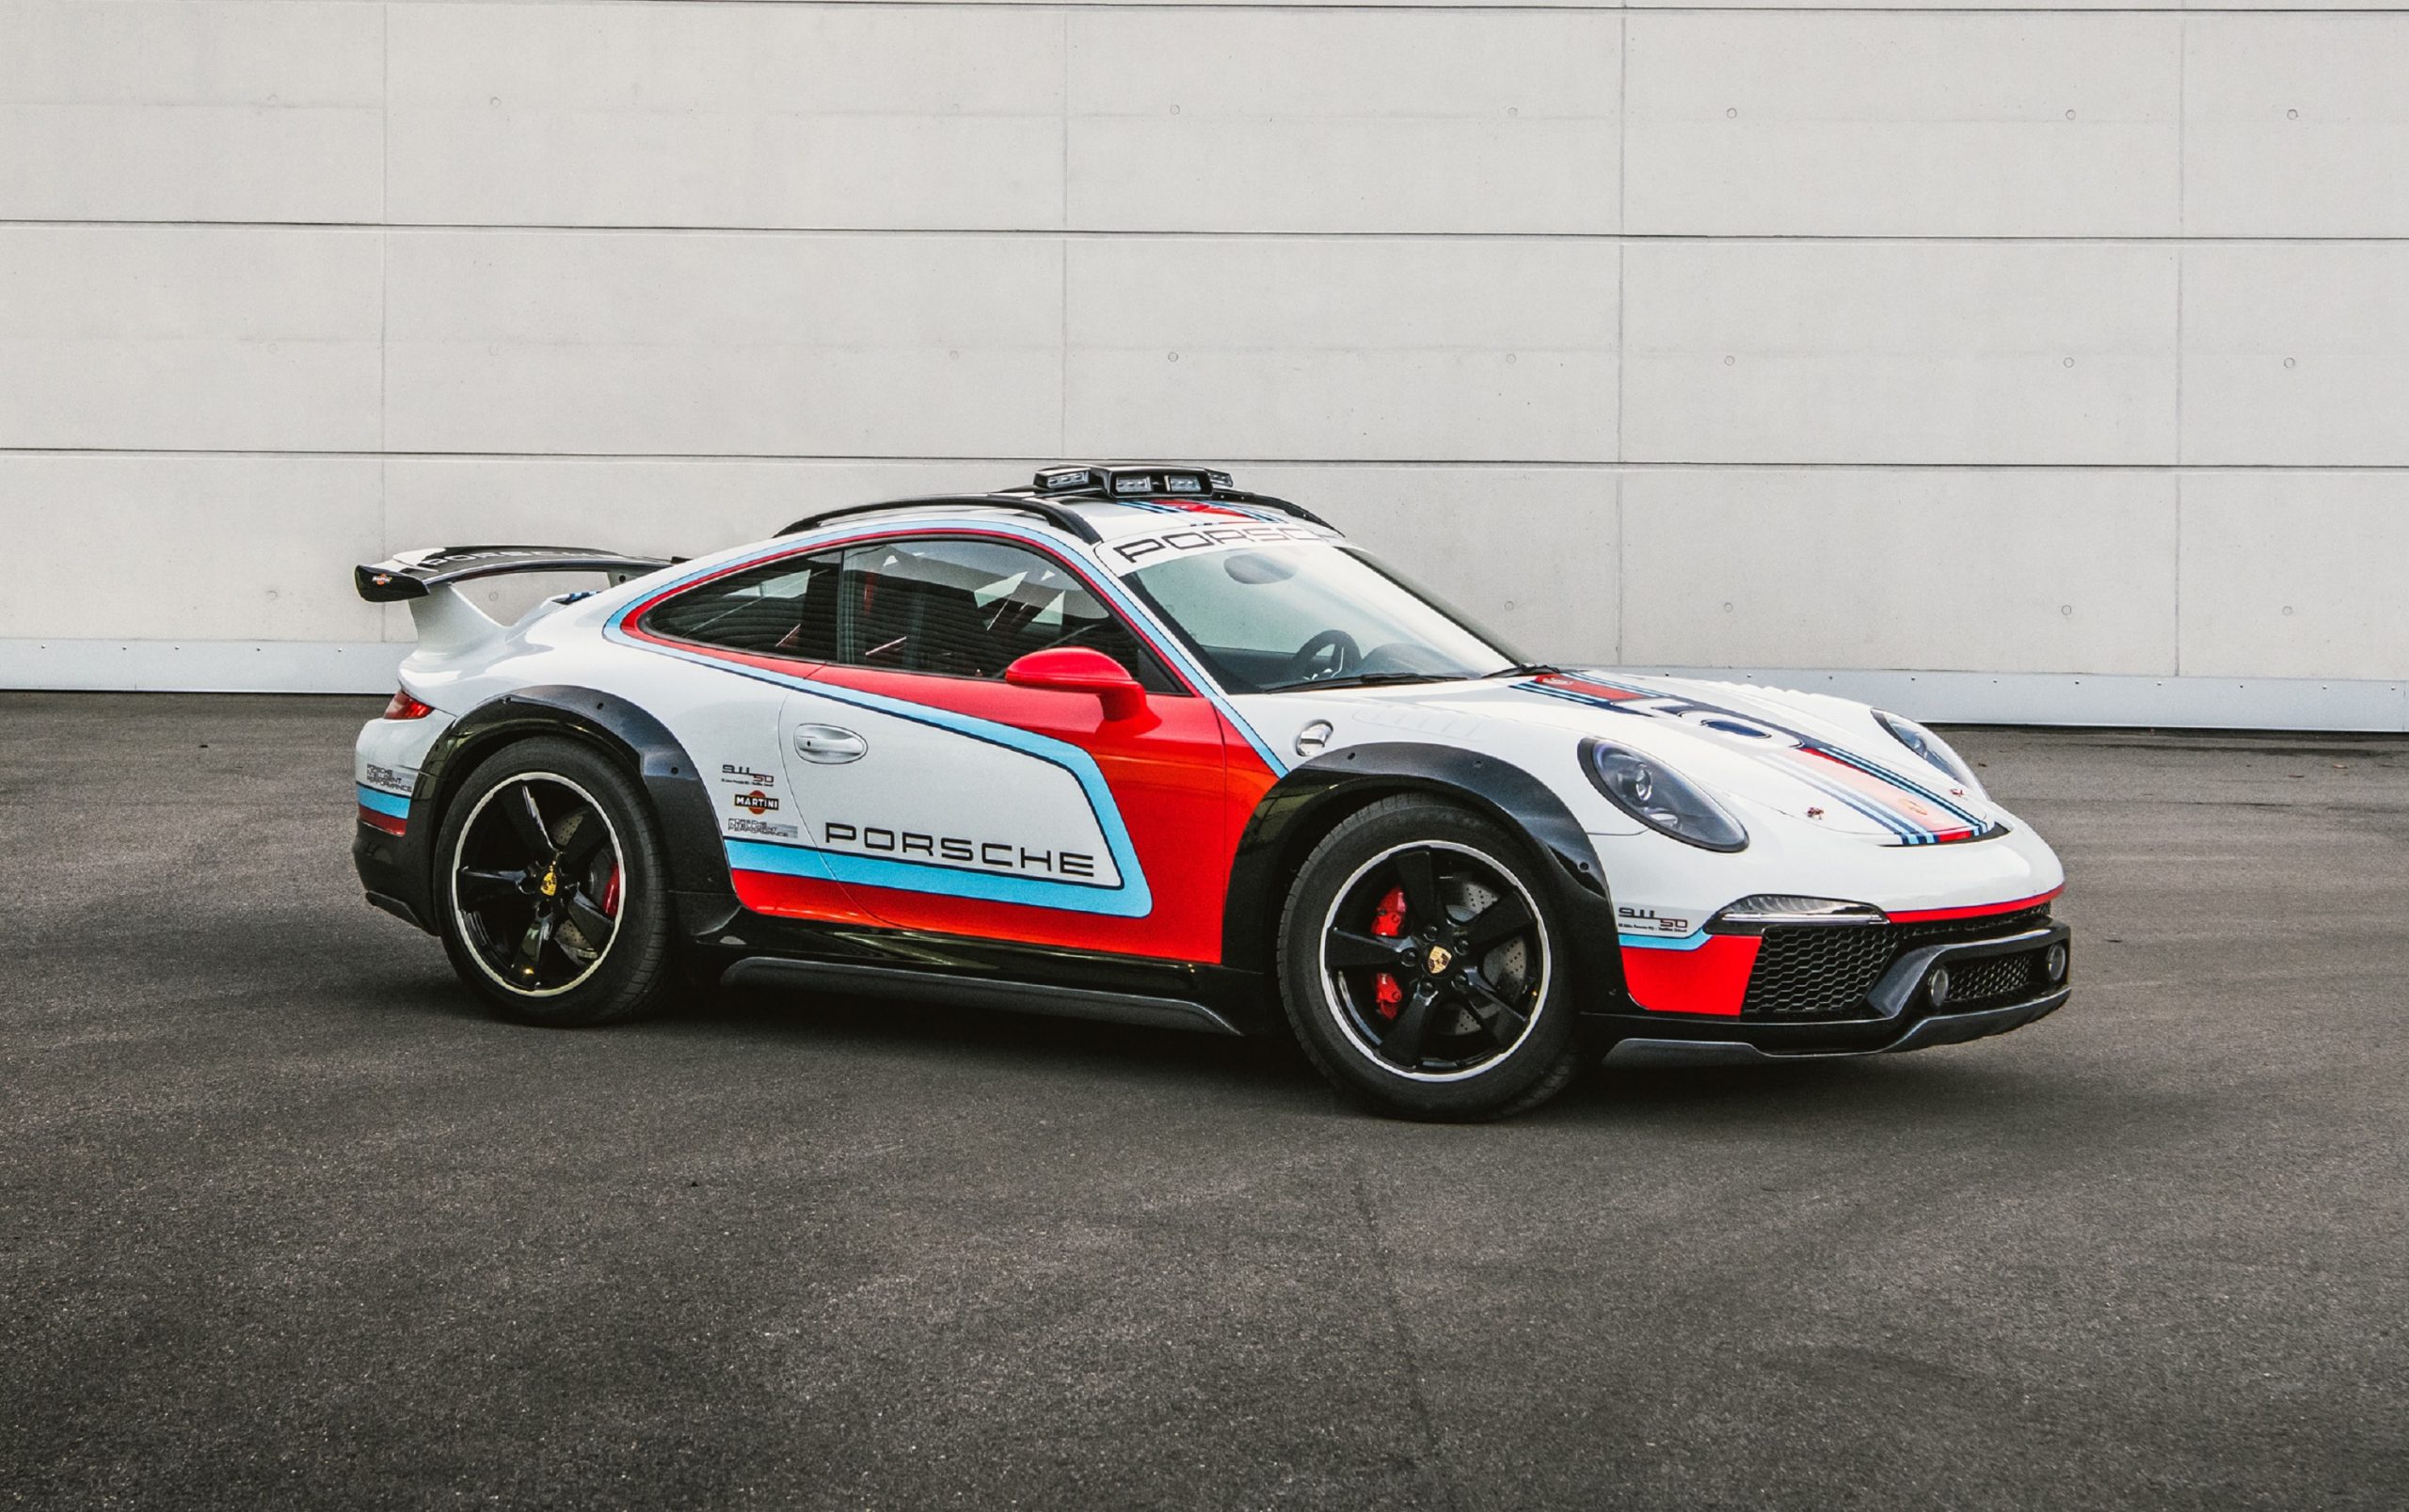 The white-red-and-blue 2012 Porsche 911 Vision Safari concept